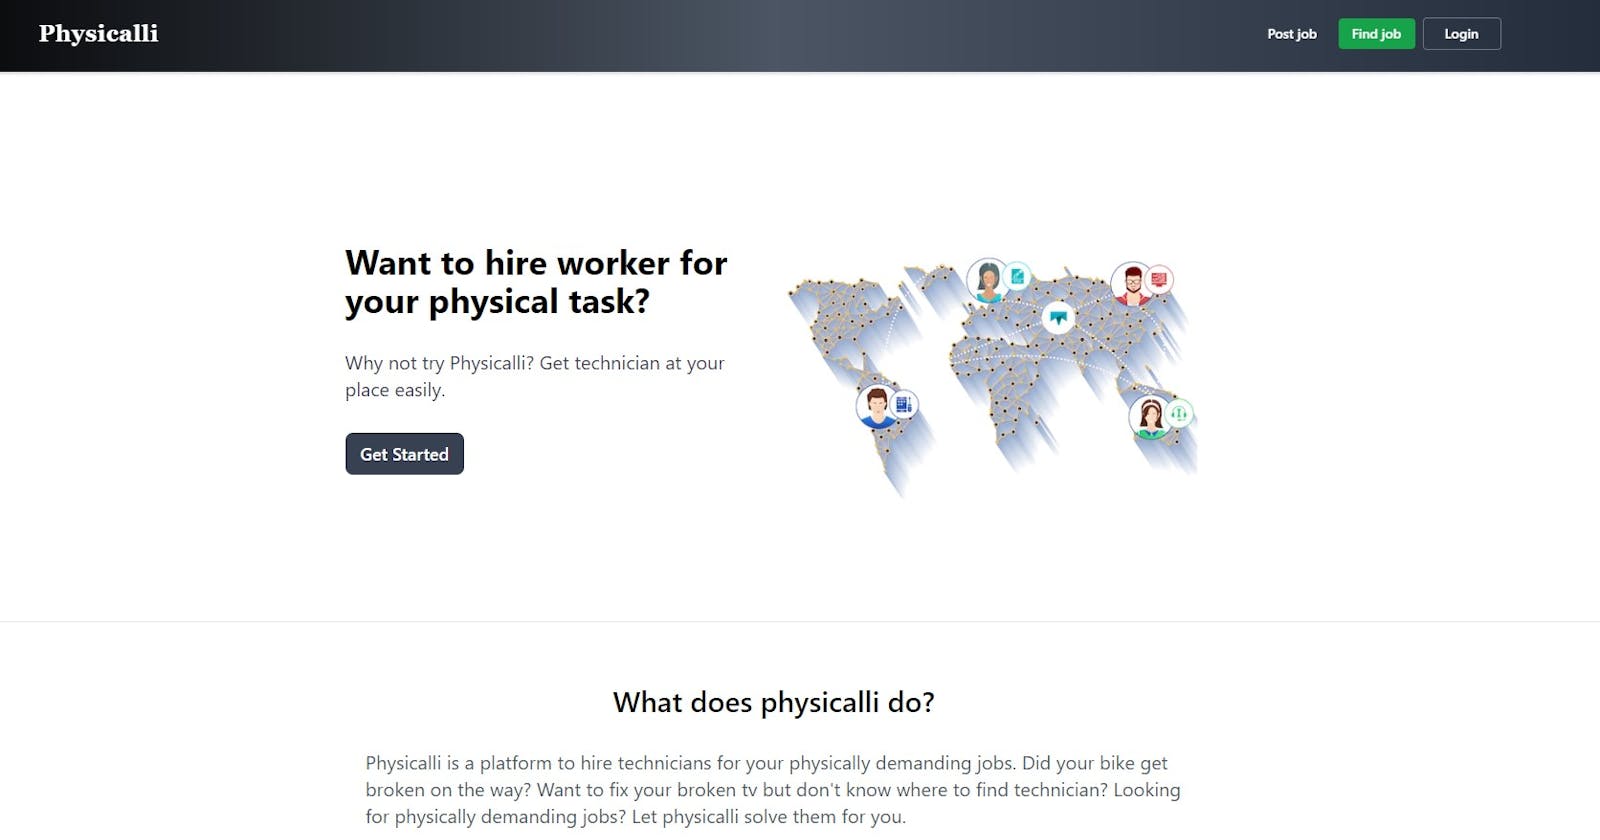 Physicalli - A physical job posting platform